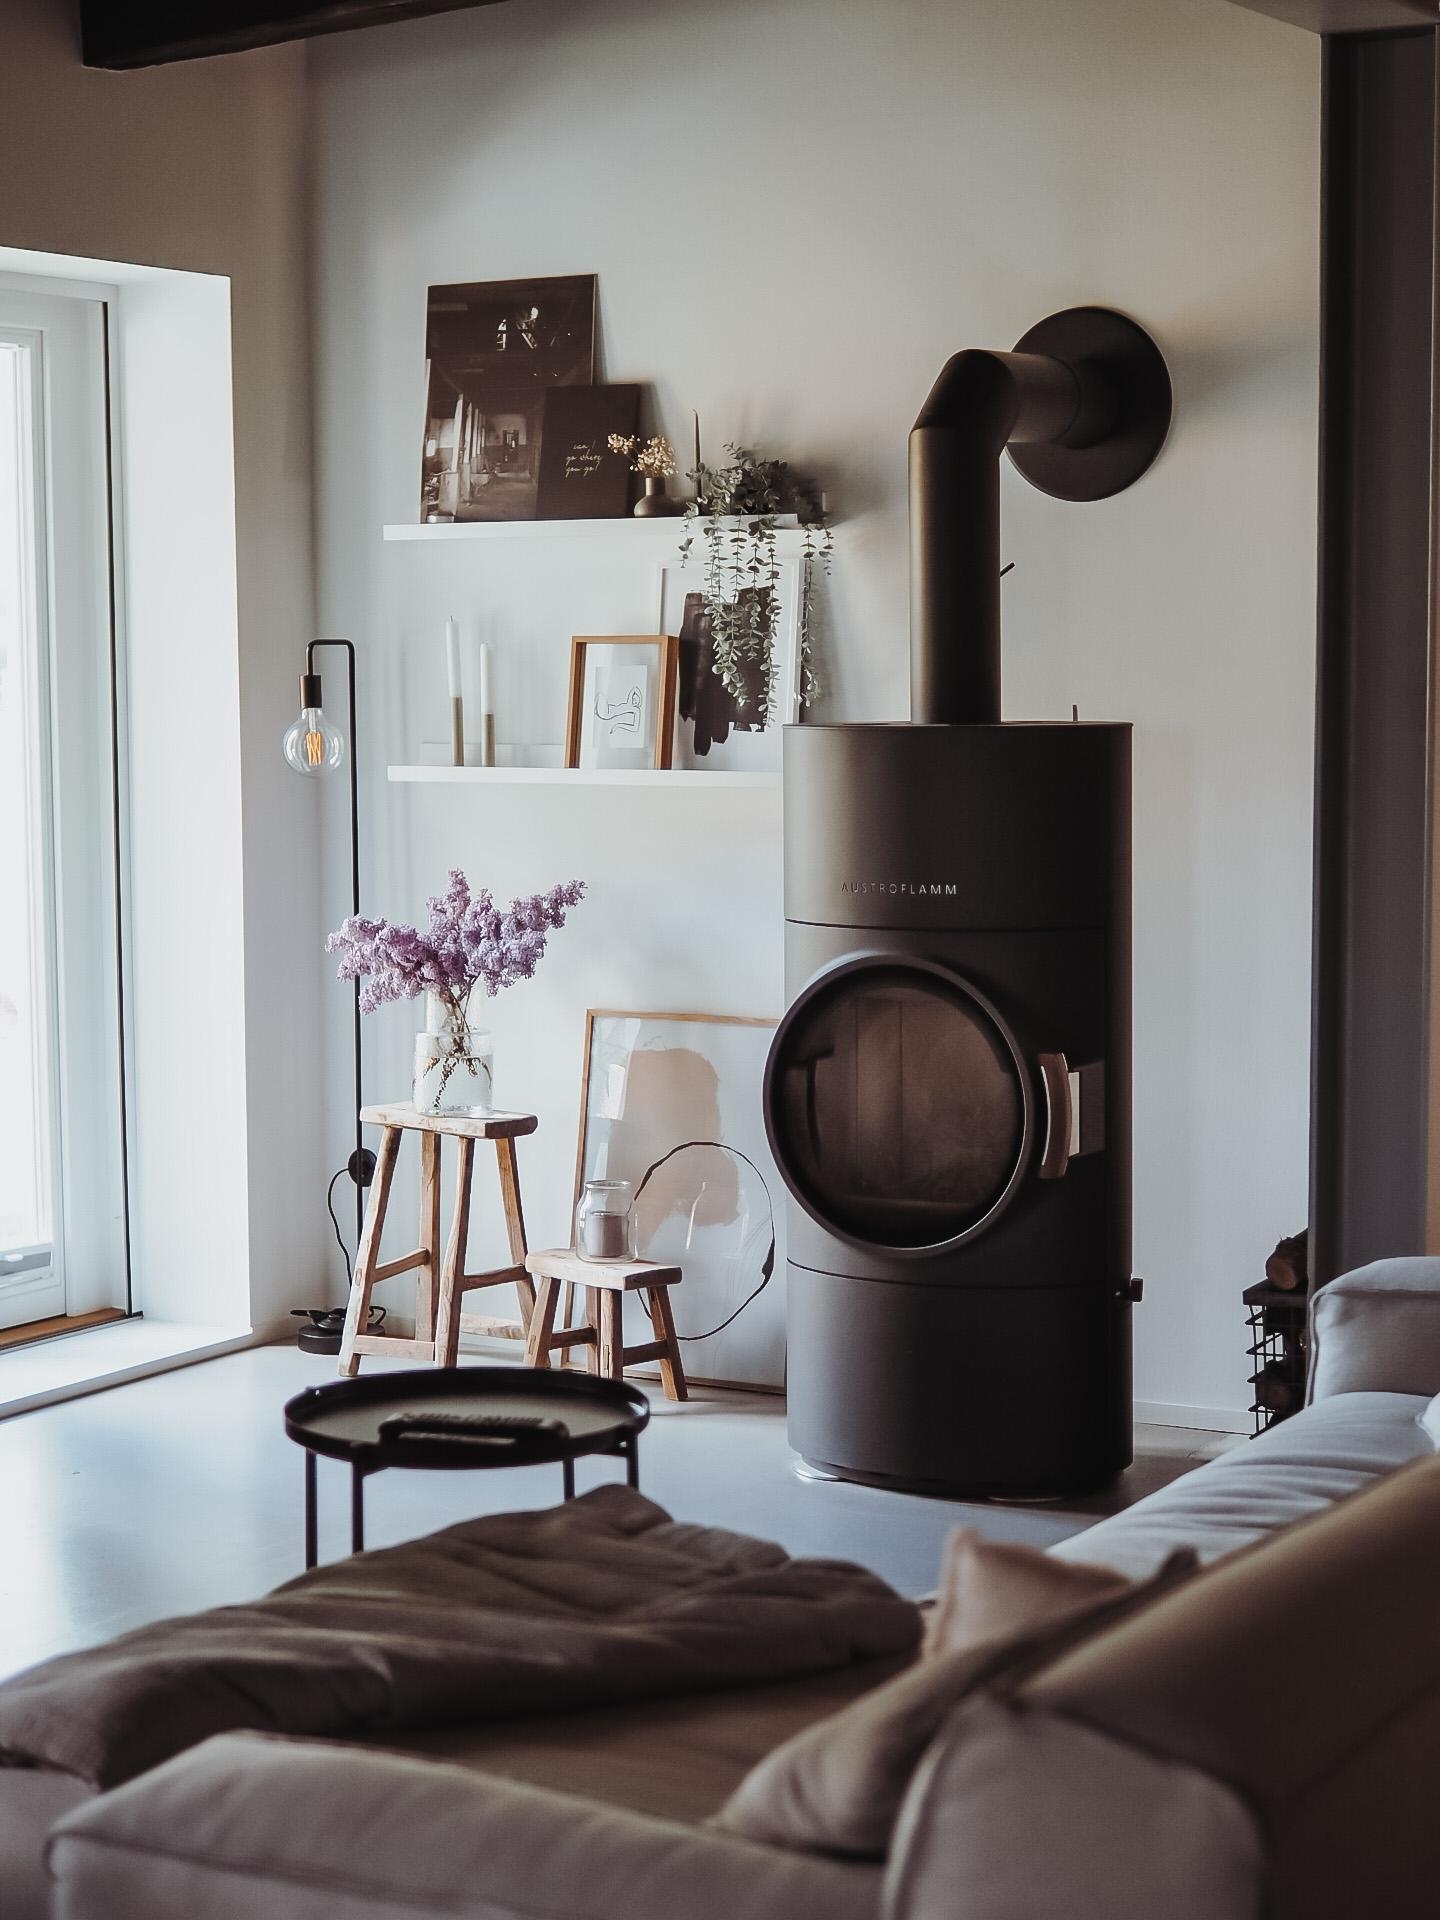 #wohnzimmer #sofa #bilderwand #vase #kaminofen #fotowand #scandi #interiorinspo #homeinspo #altbau #altbauliebe